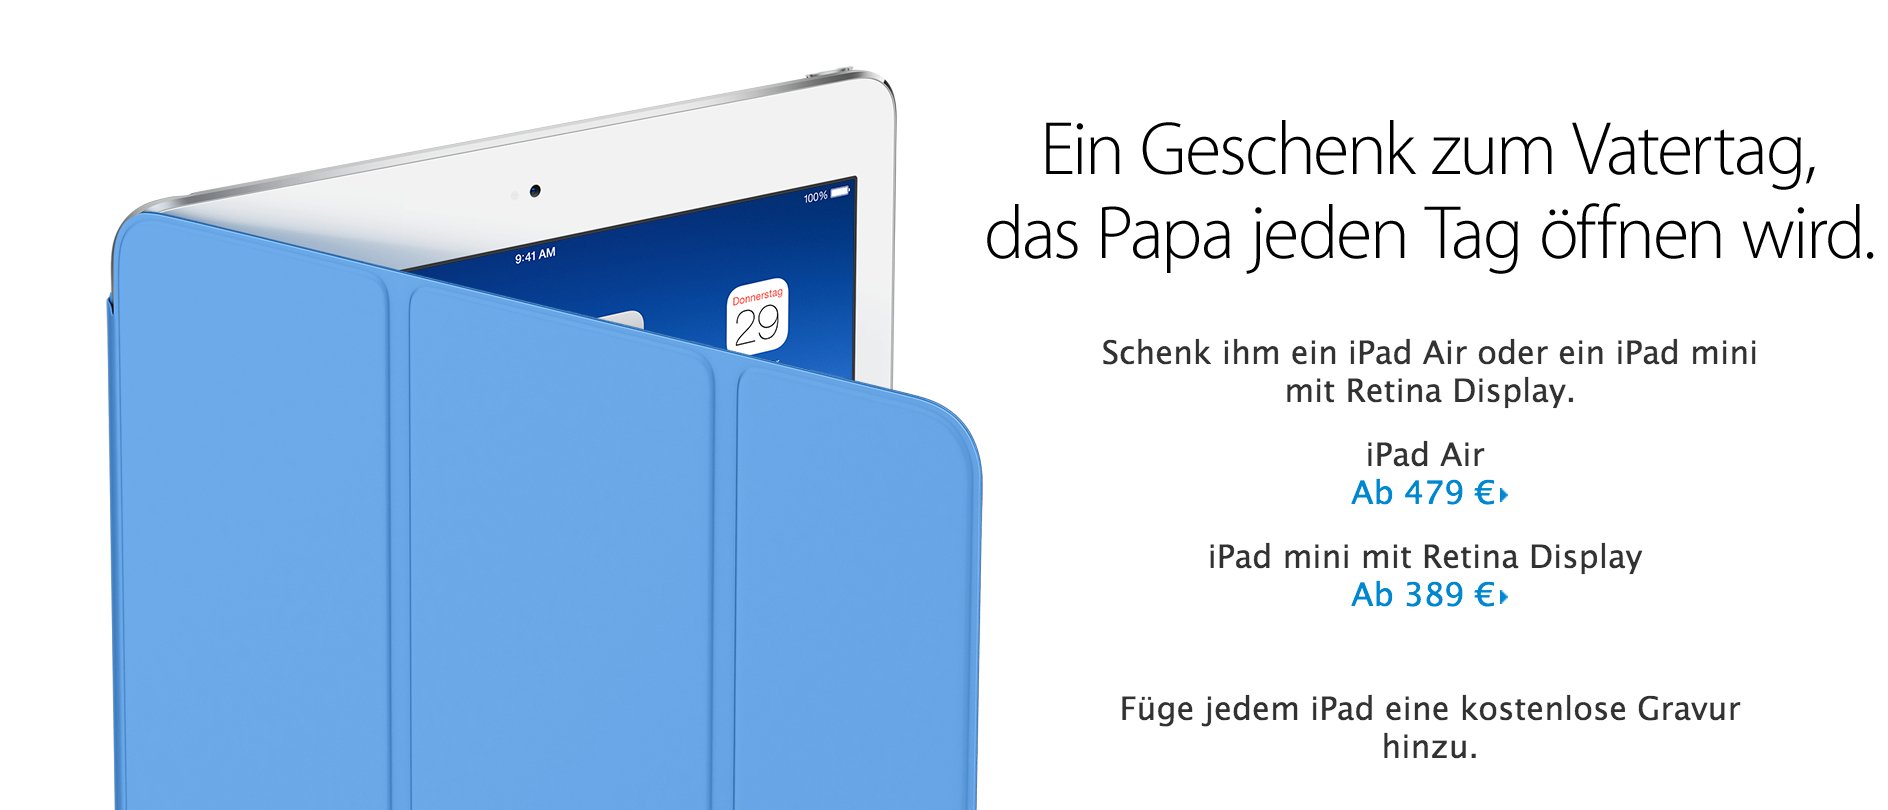 Geschenke zu Vatertag: Schenke Papa ein iPad! 3